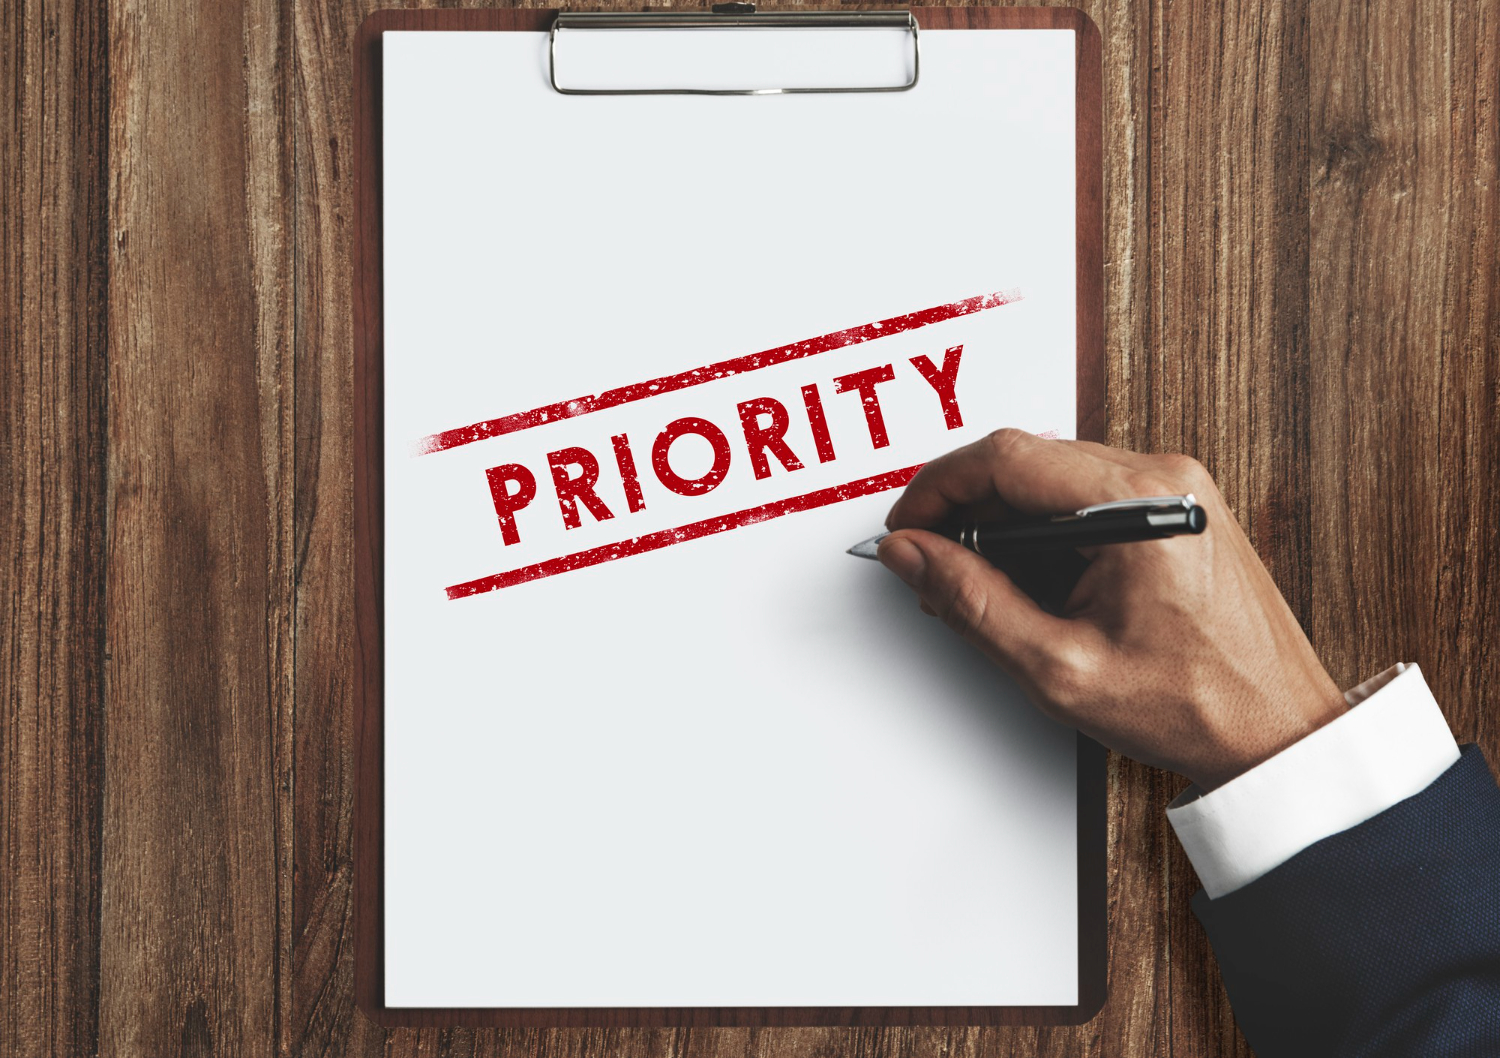 Mengatur jadwal prioritas agar lebih produktif